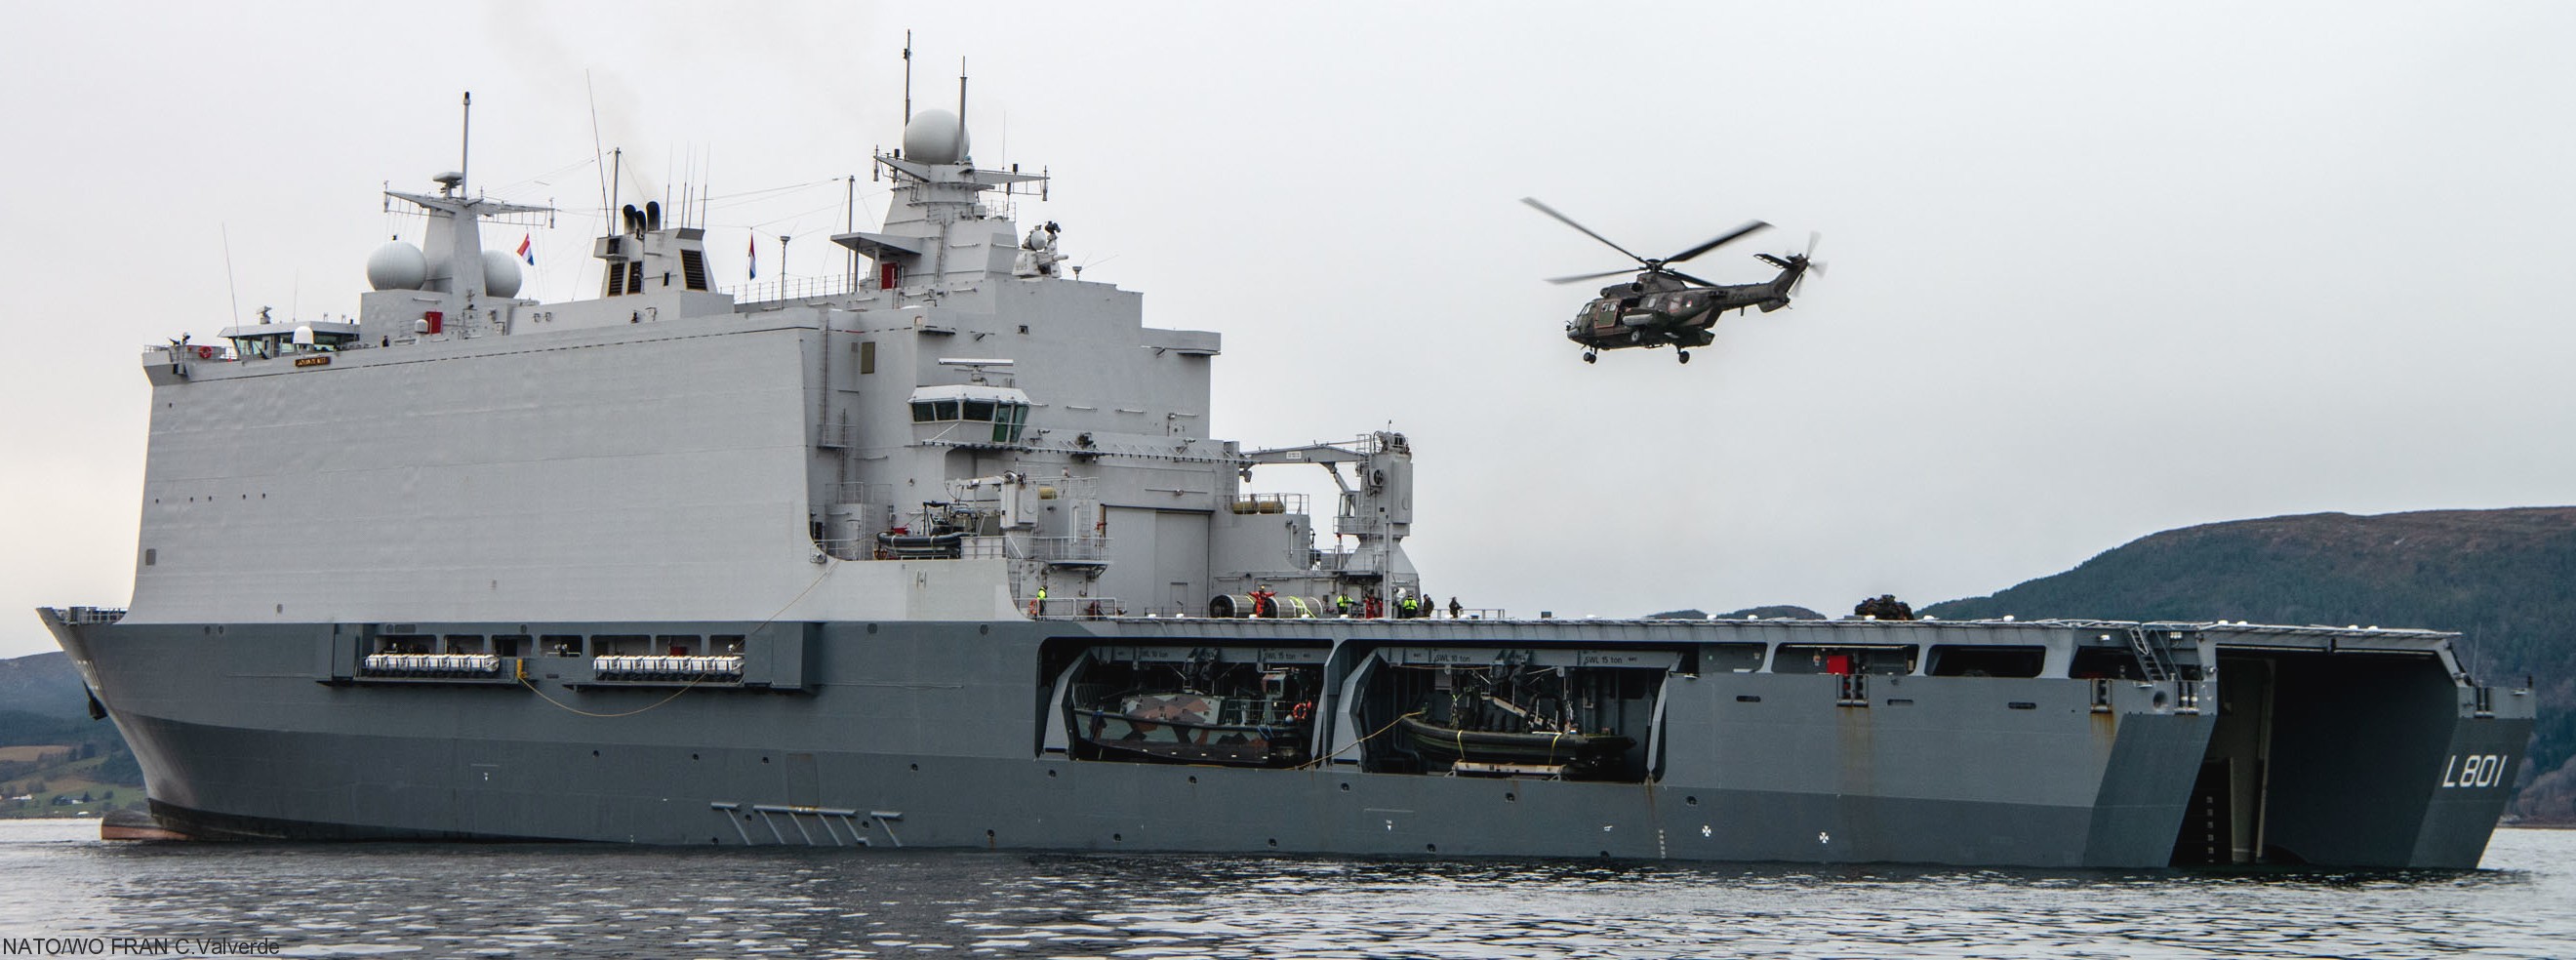 l-801 hnlms johan de witt amphibious ship landing platform dock lpd royal netherlands navy 17